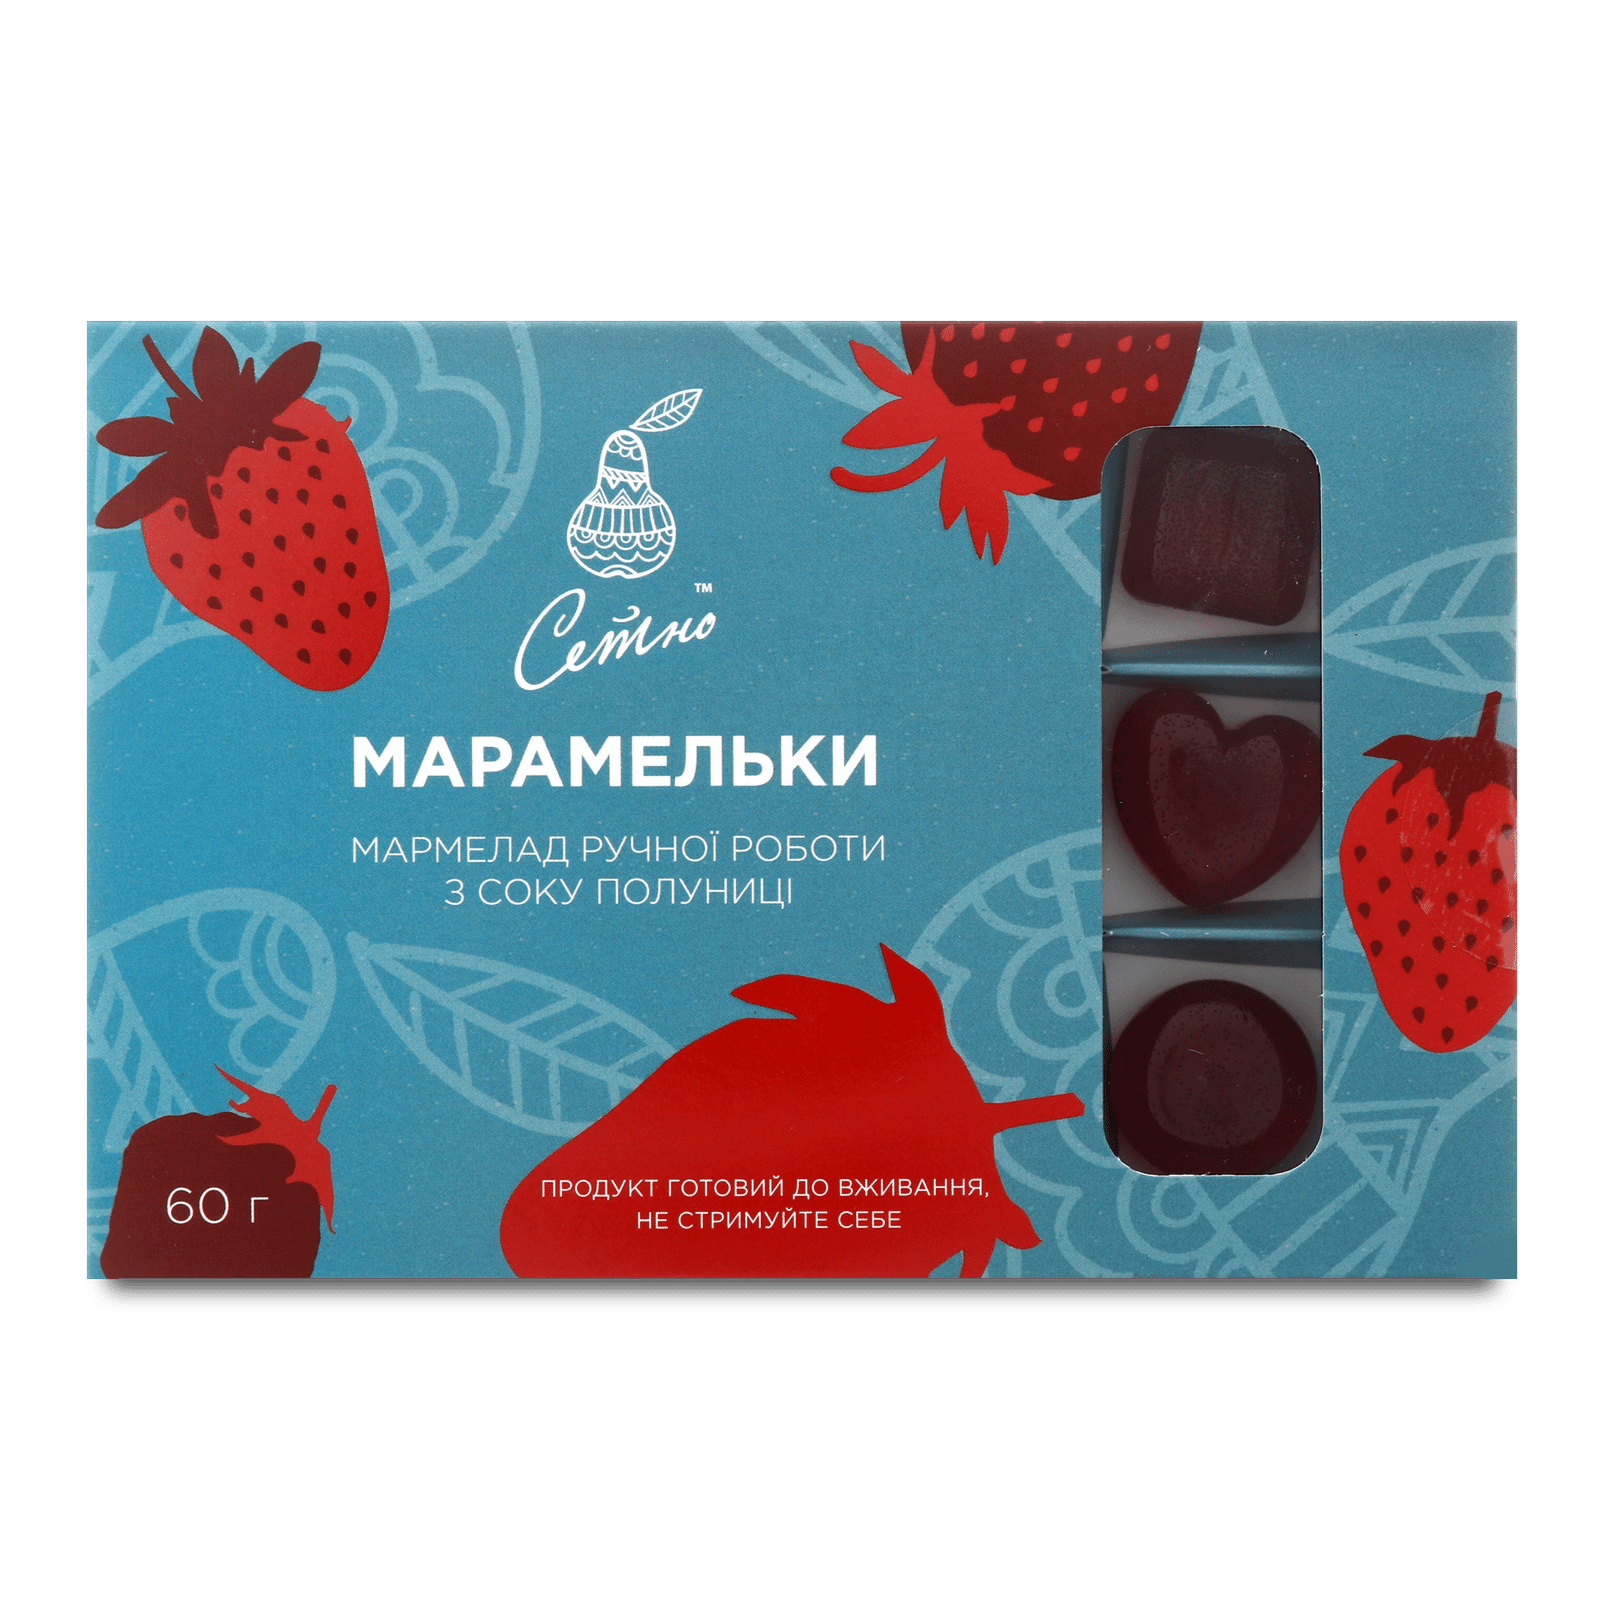 Мармелад «Лавка традицій» «Сетно» «Марамельки» з соку полуниці - 1